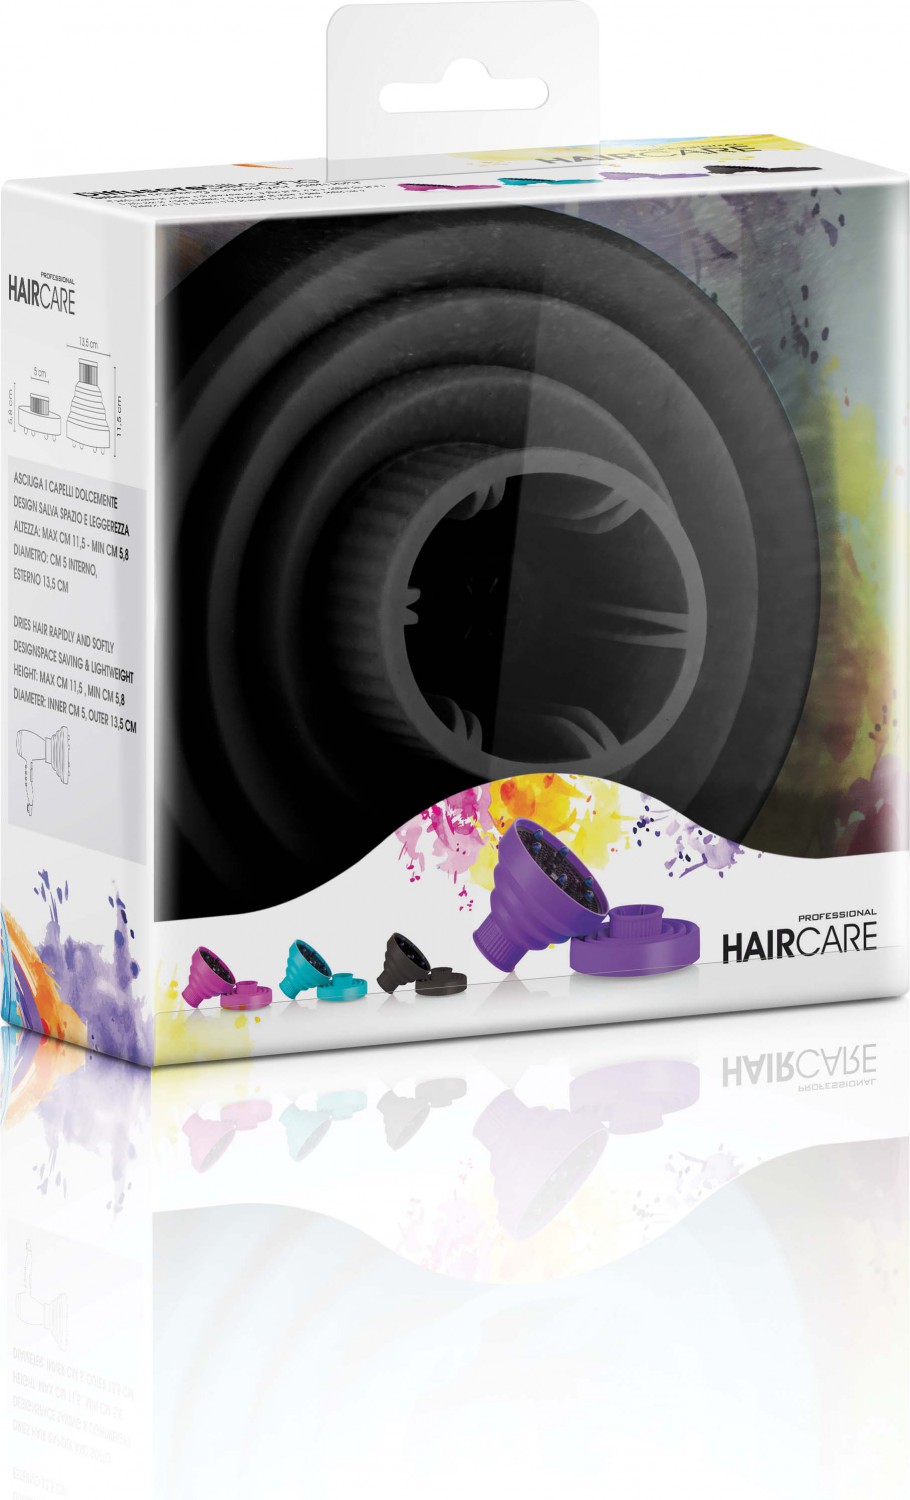  XanitaliaPro Professional HairCare Silicon Diffuser Black 